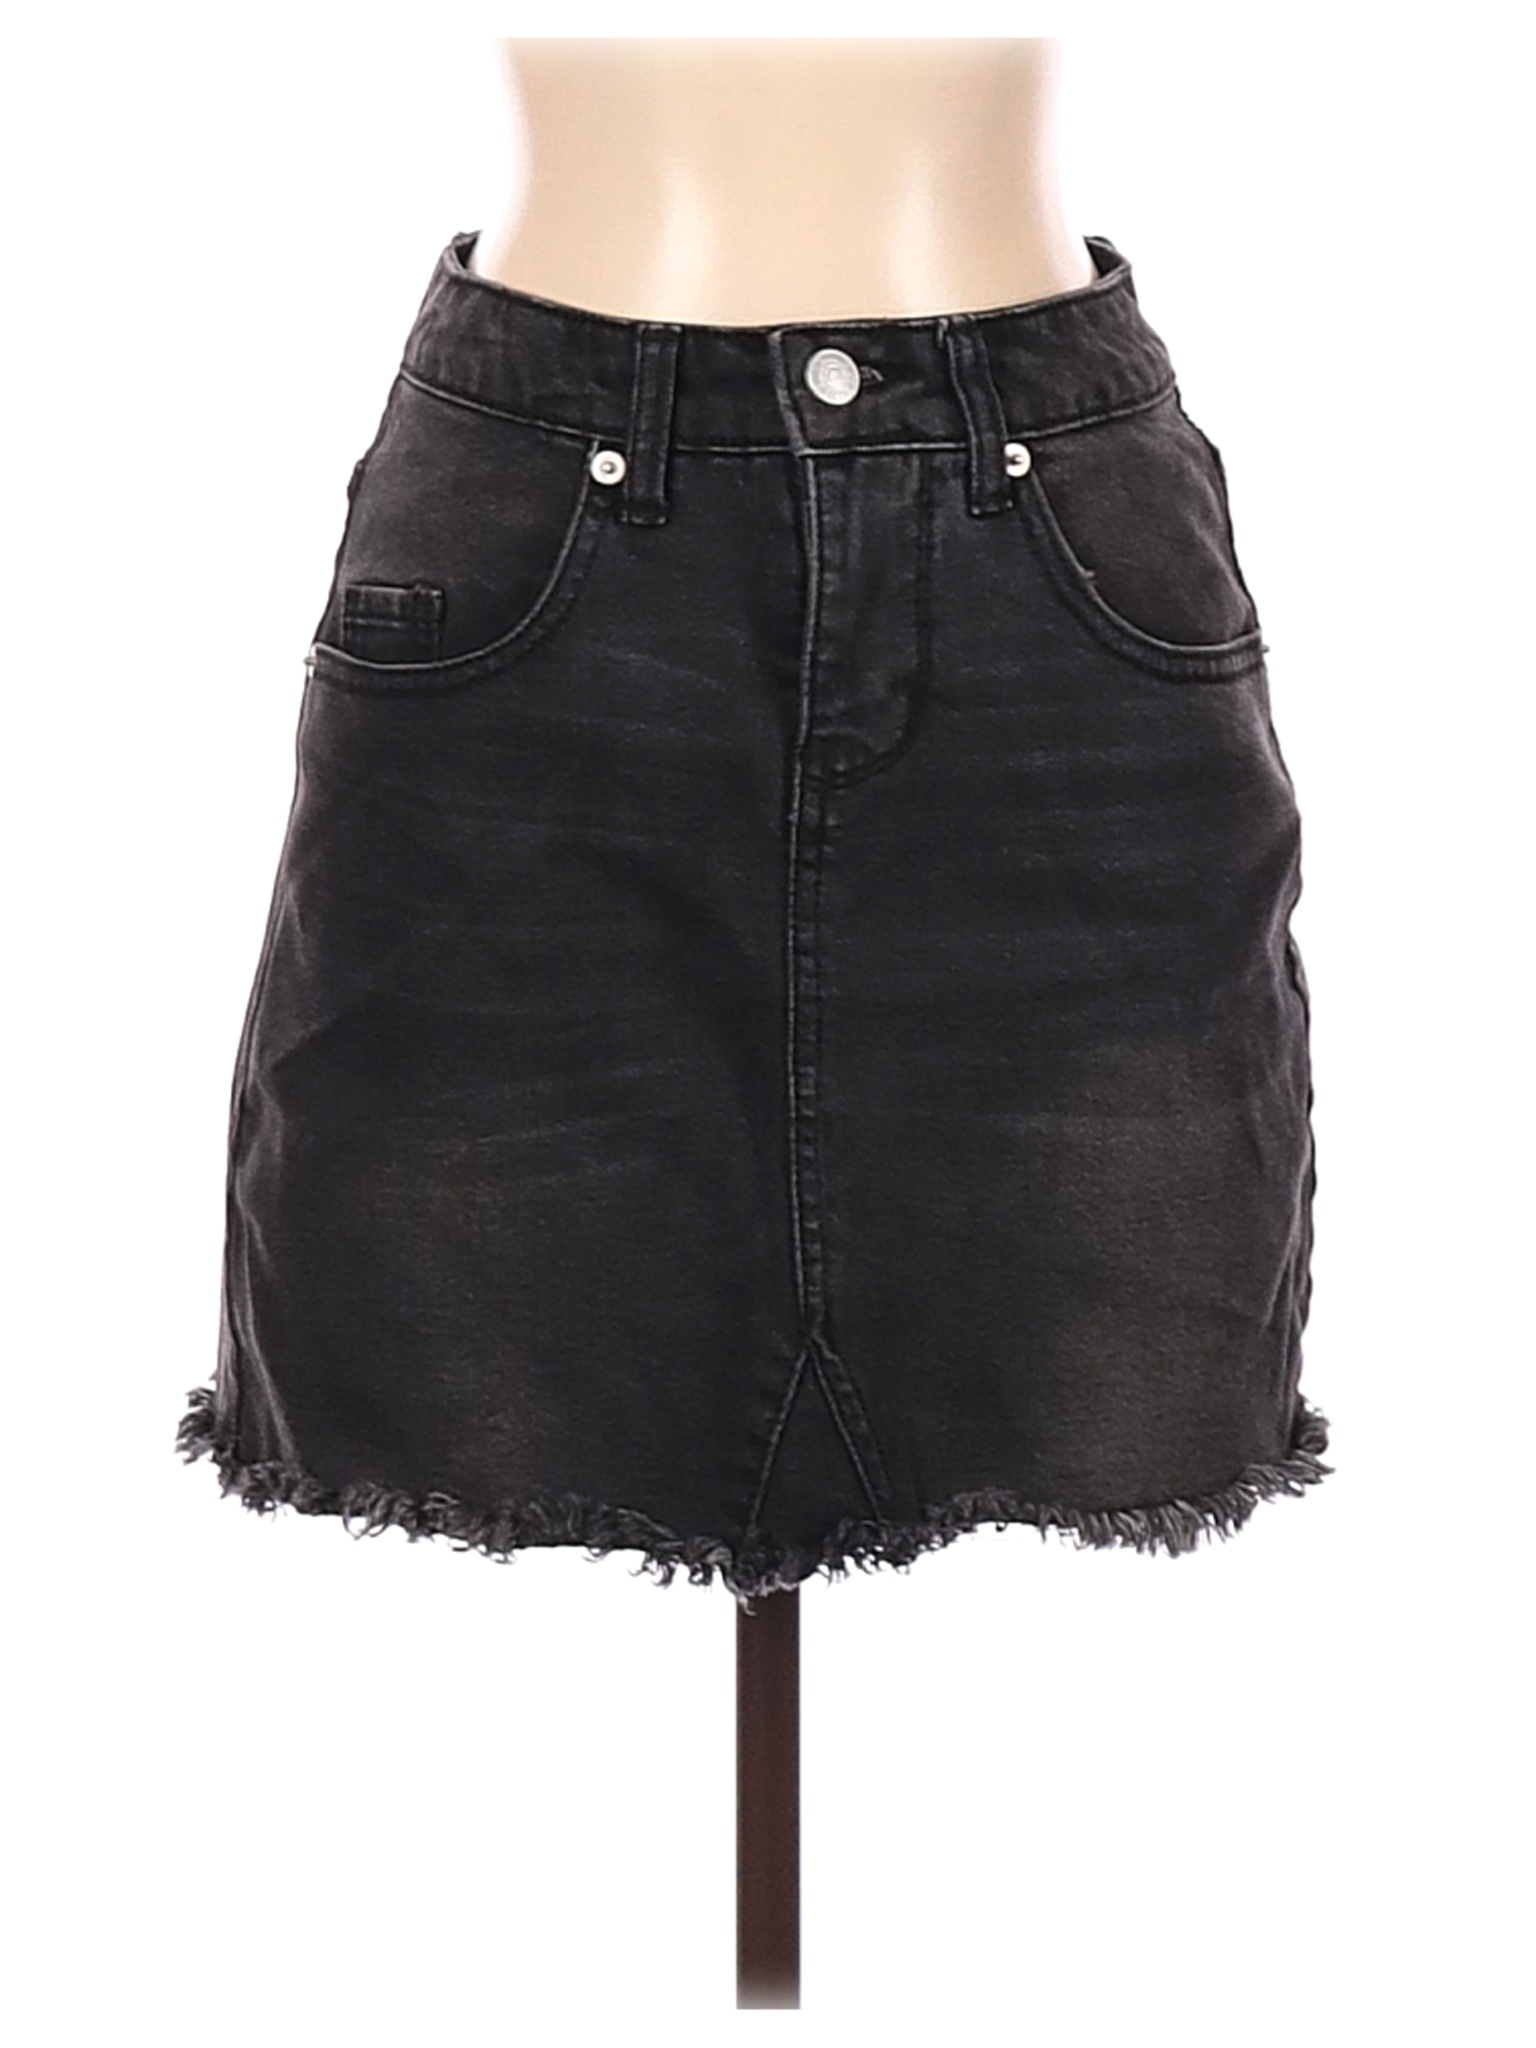 Wild Fable Women Black Denim Skirt 0 | eBay